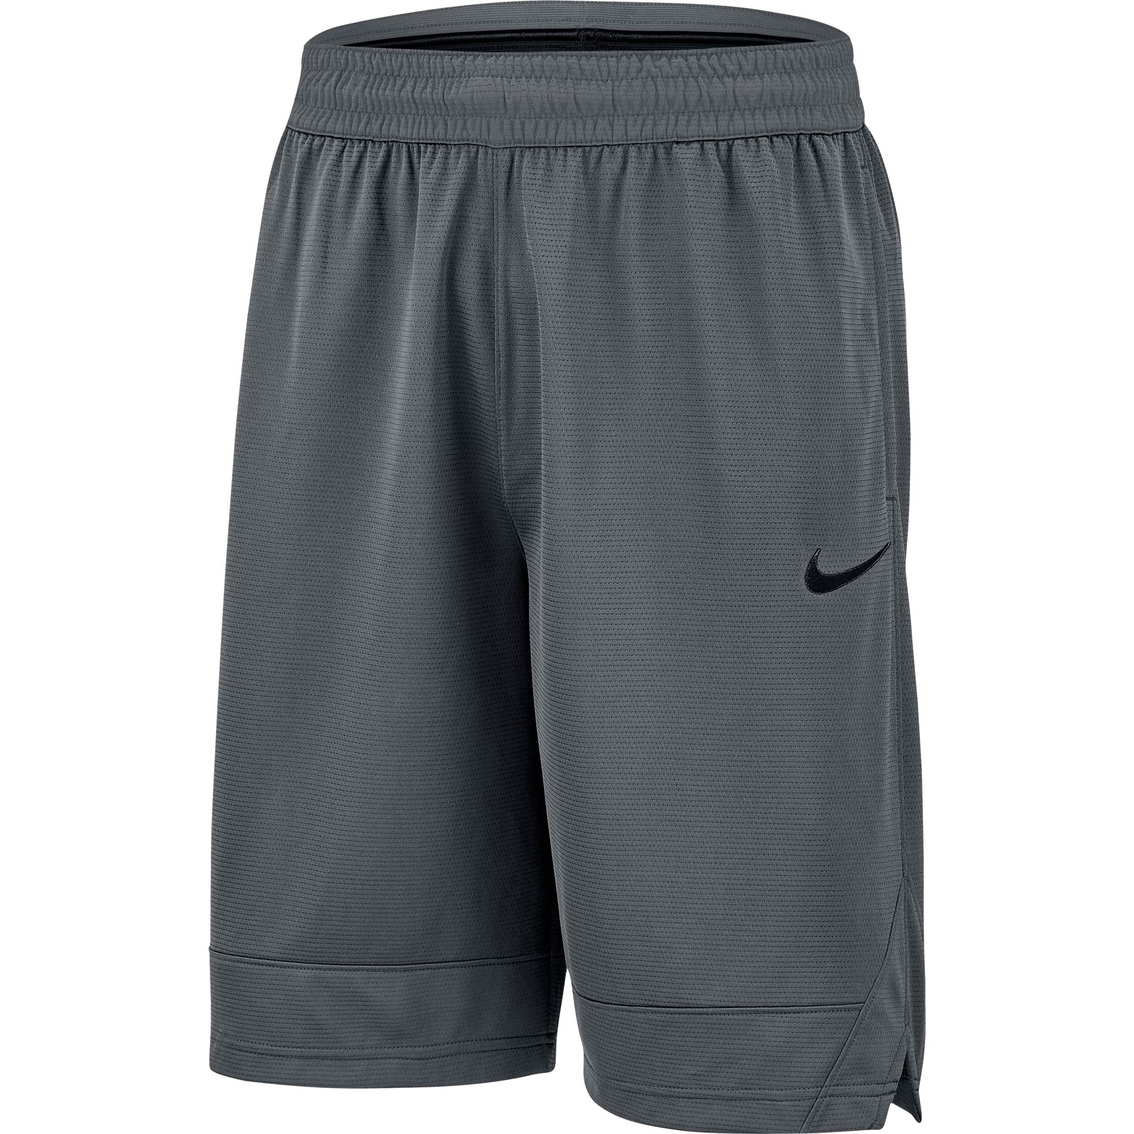 Nike Dry Icon Shorts - Image 4 of 5